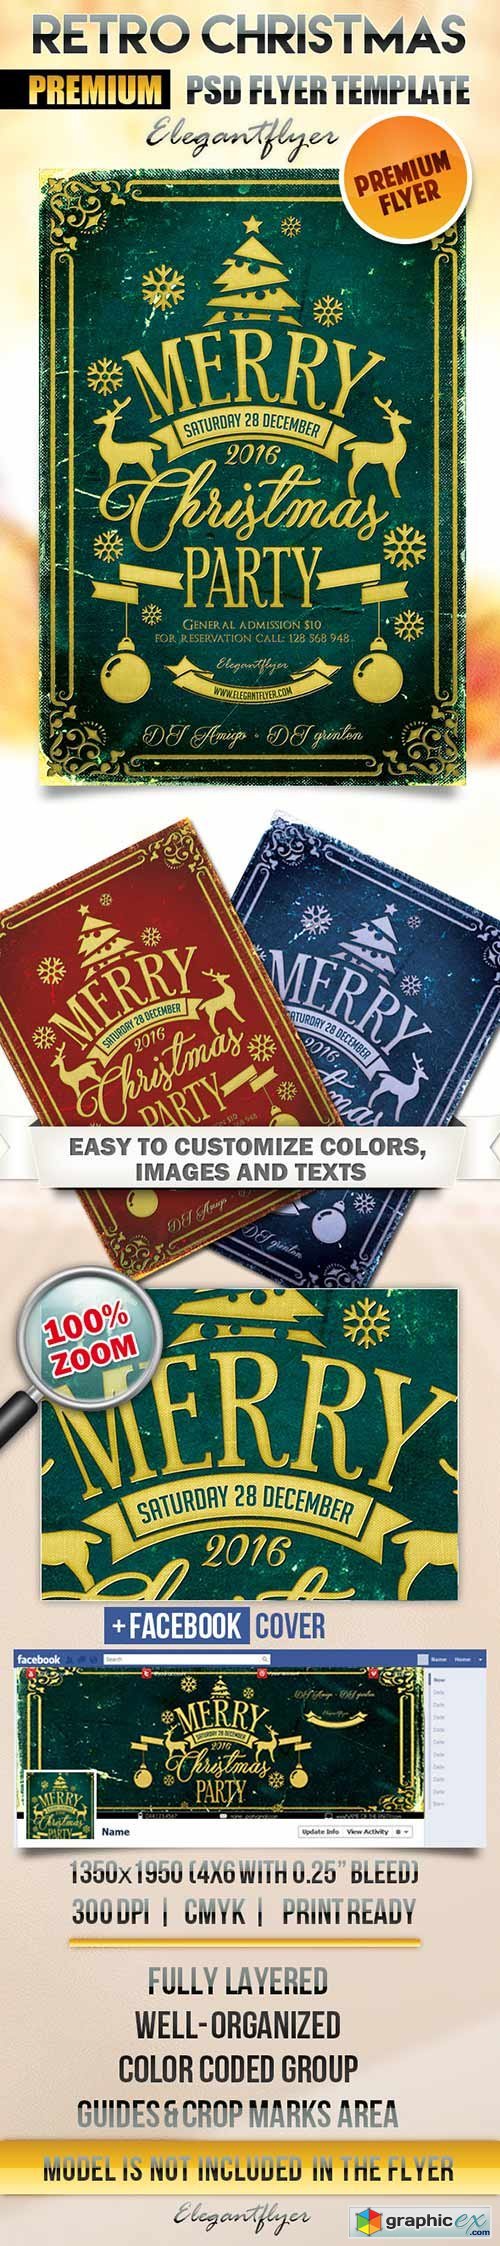 Retro Christmas Flyer PSD Template + Facebook Cover